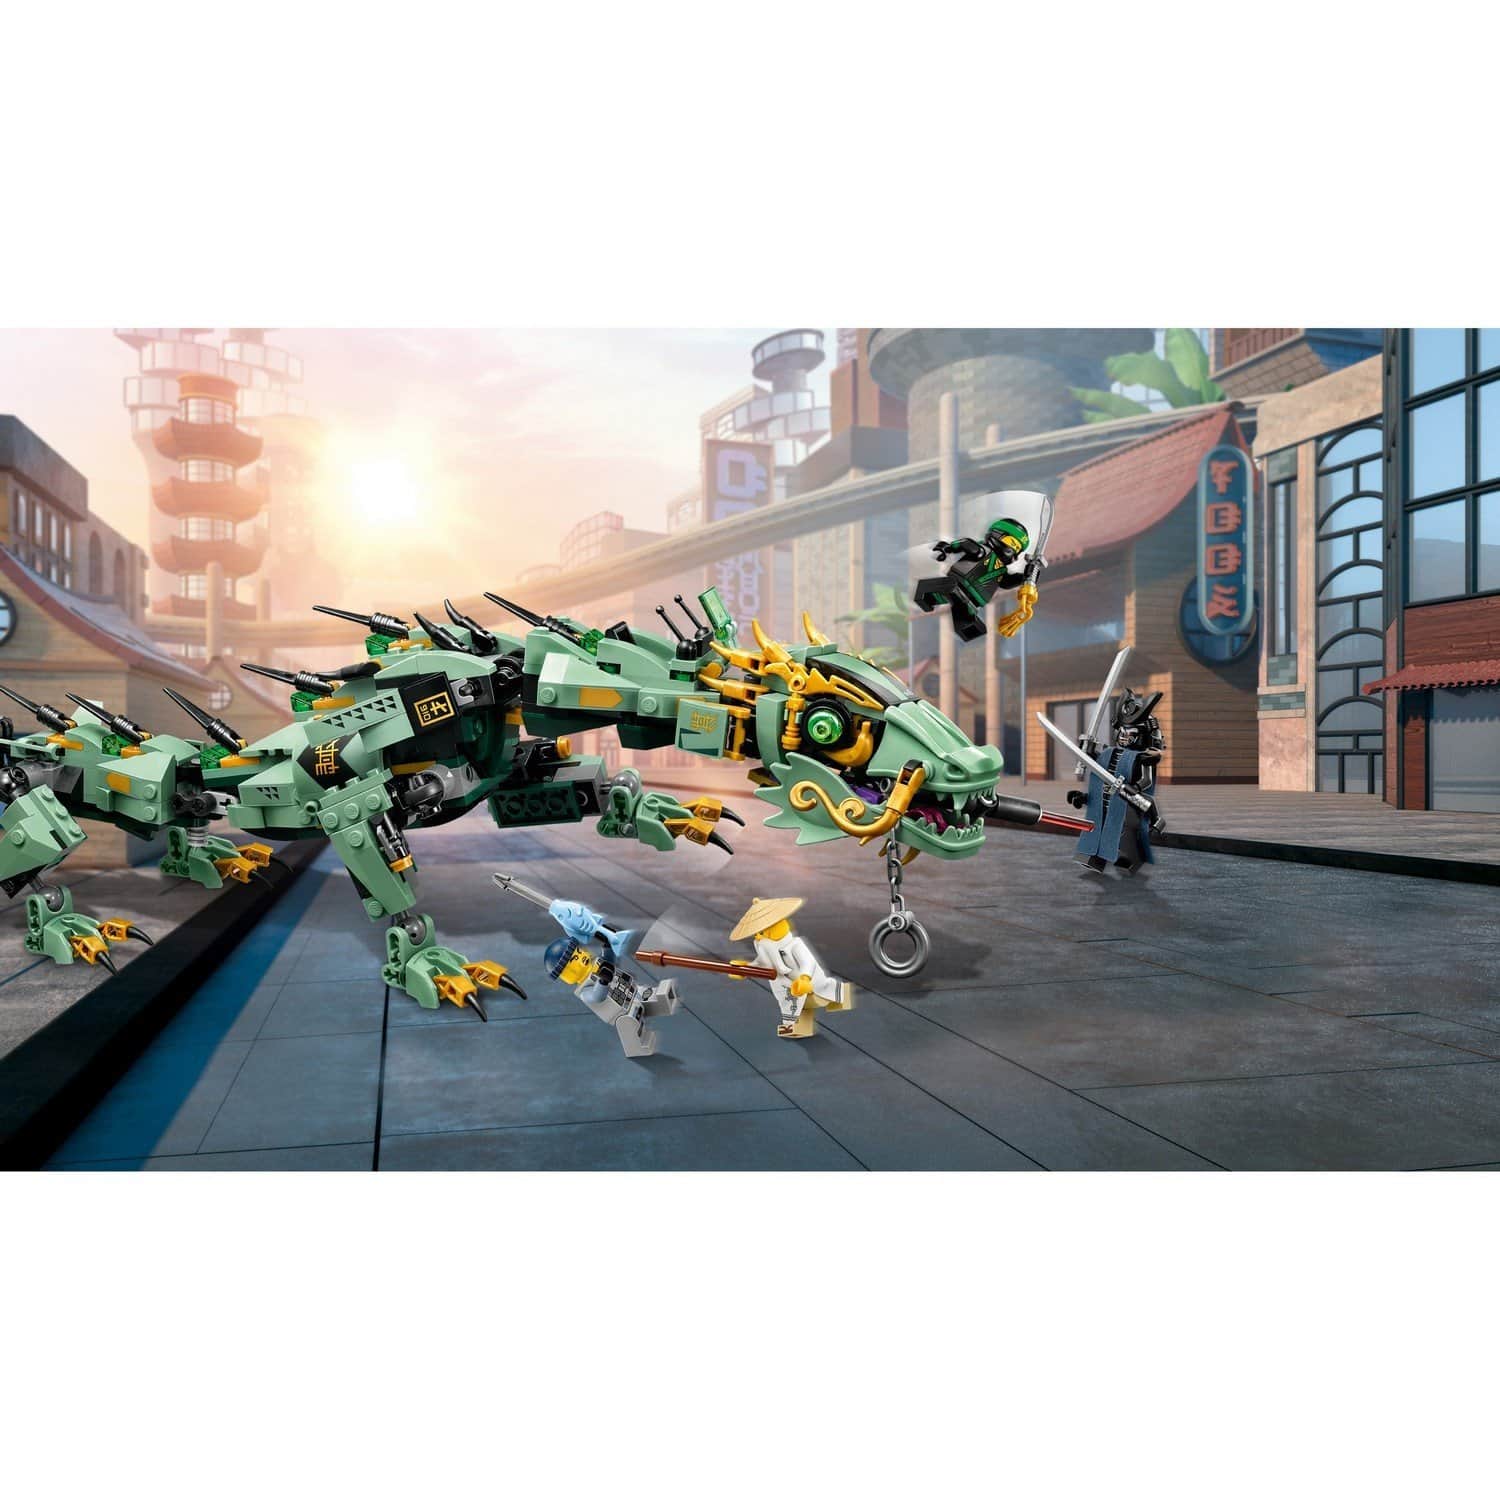 Конструктор LEGO The Ninjago Movie 70612 Механический дракон Зеленого ниндзя